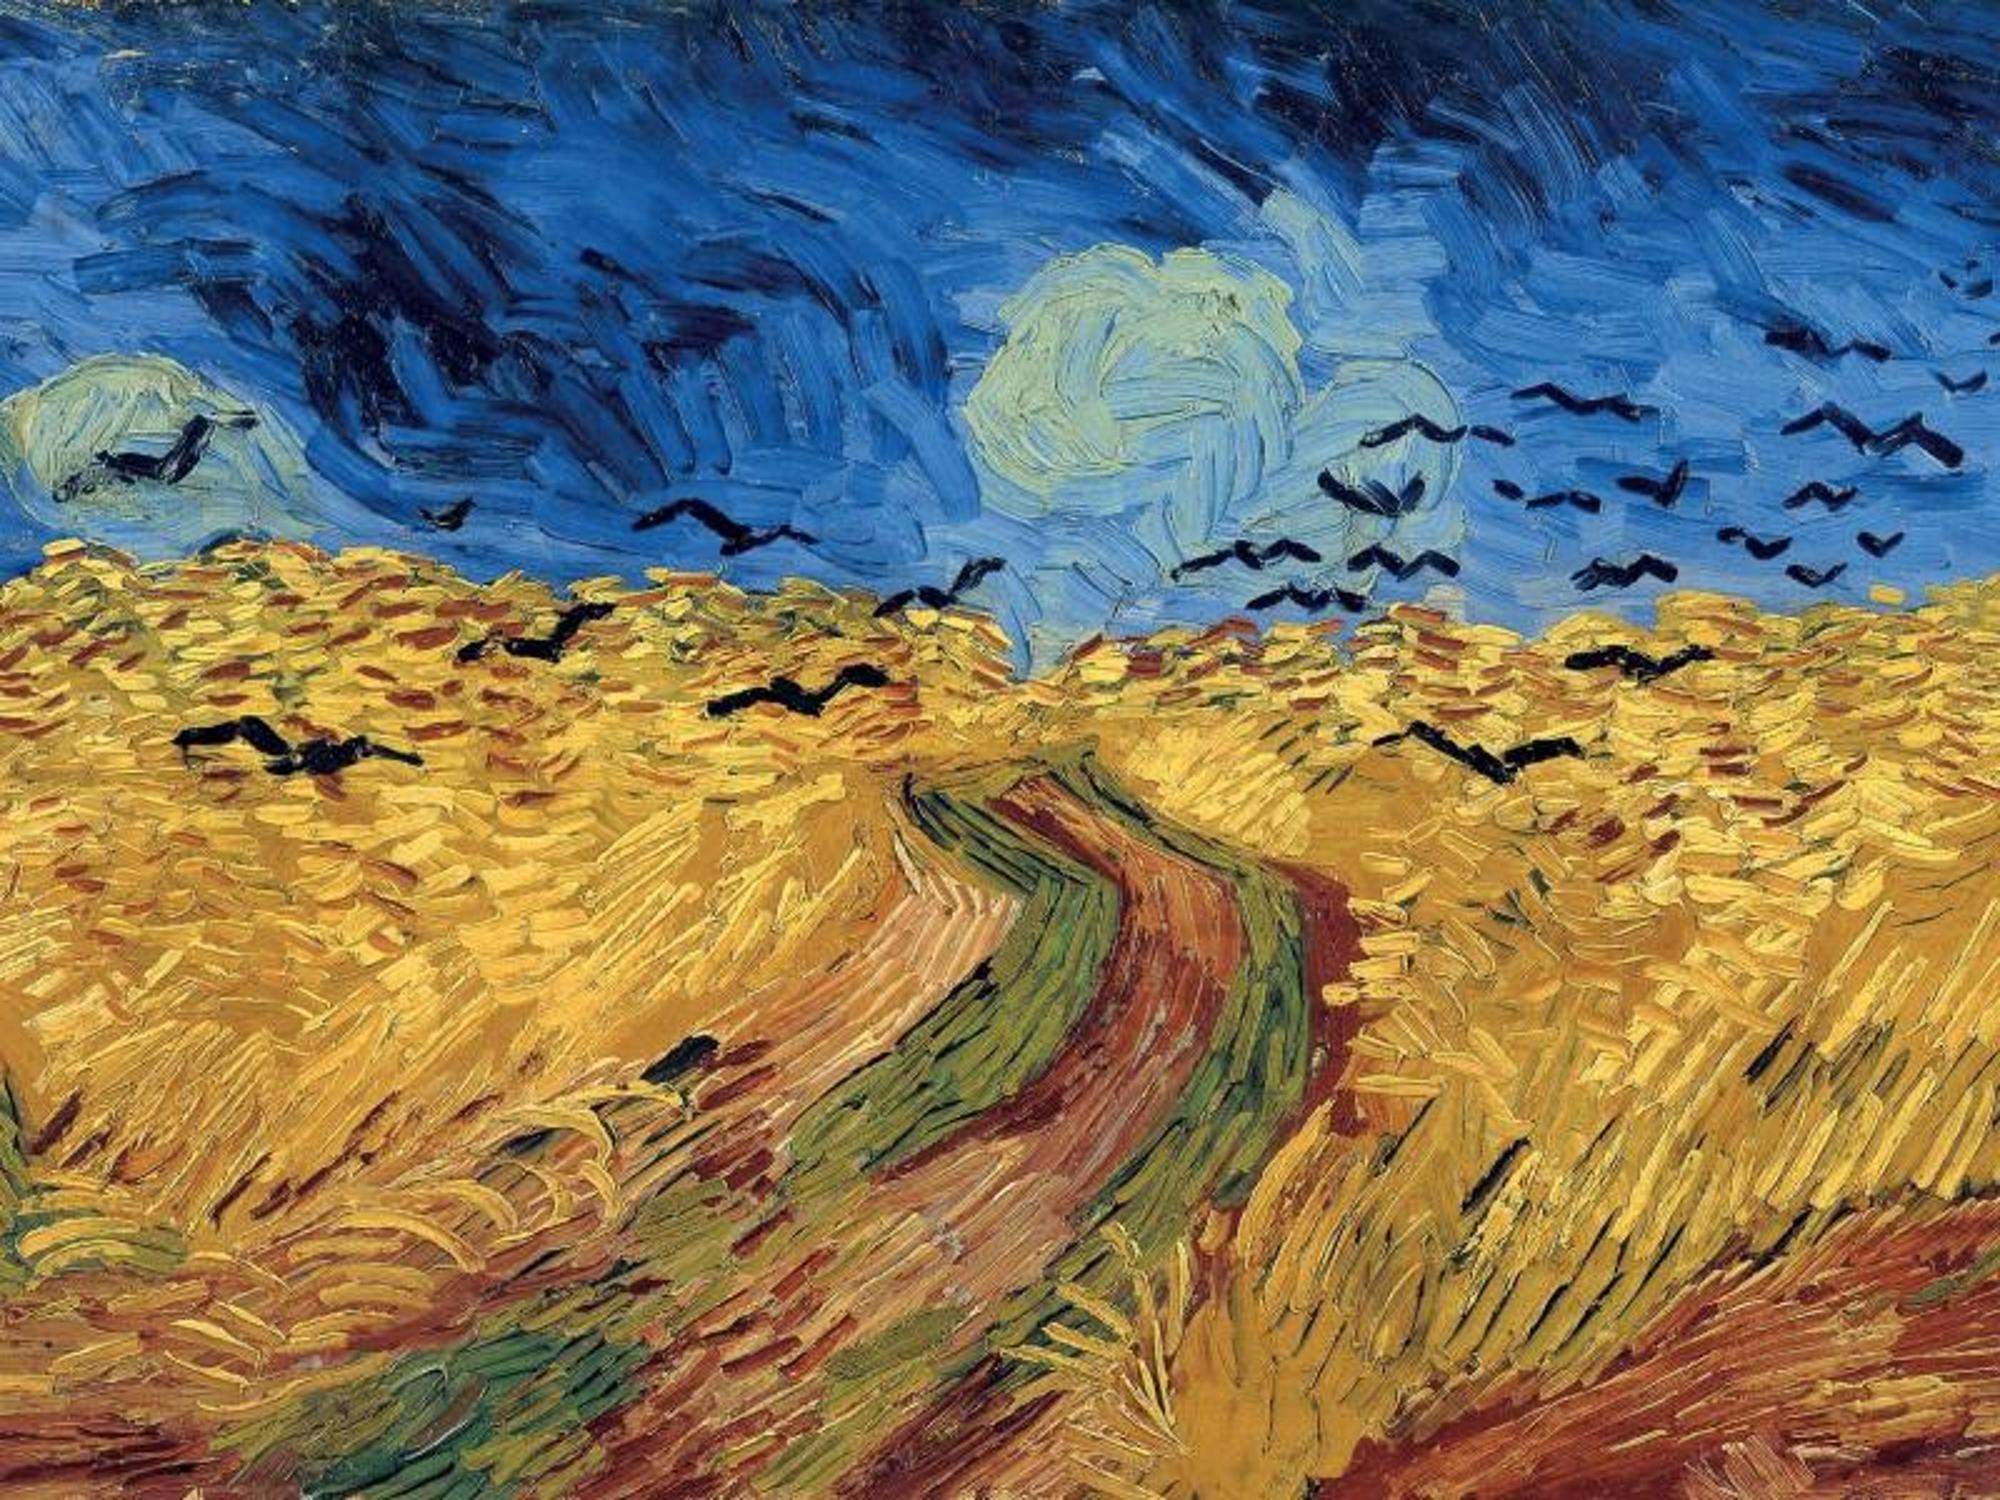 Vortrag über van Gogh, welche Unterthemen? (Schule, Kunst, Referat)